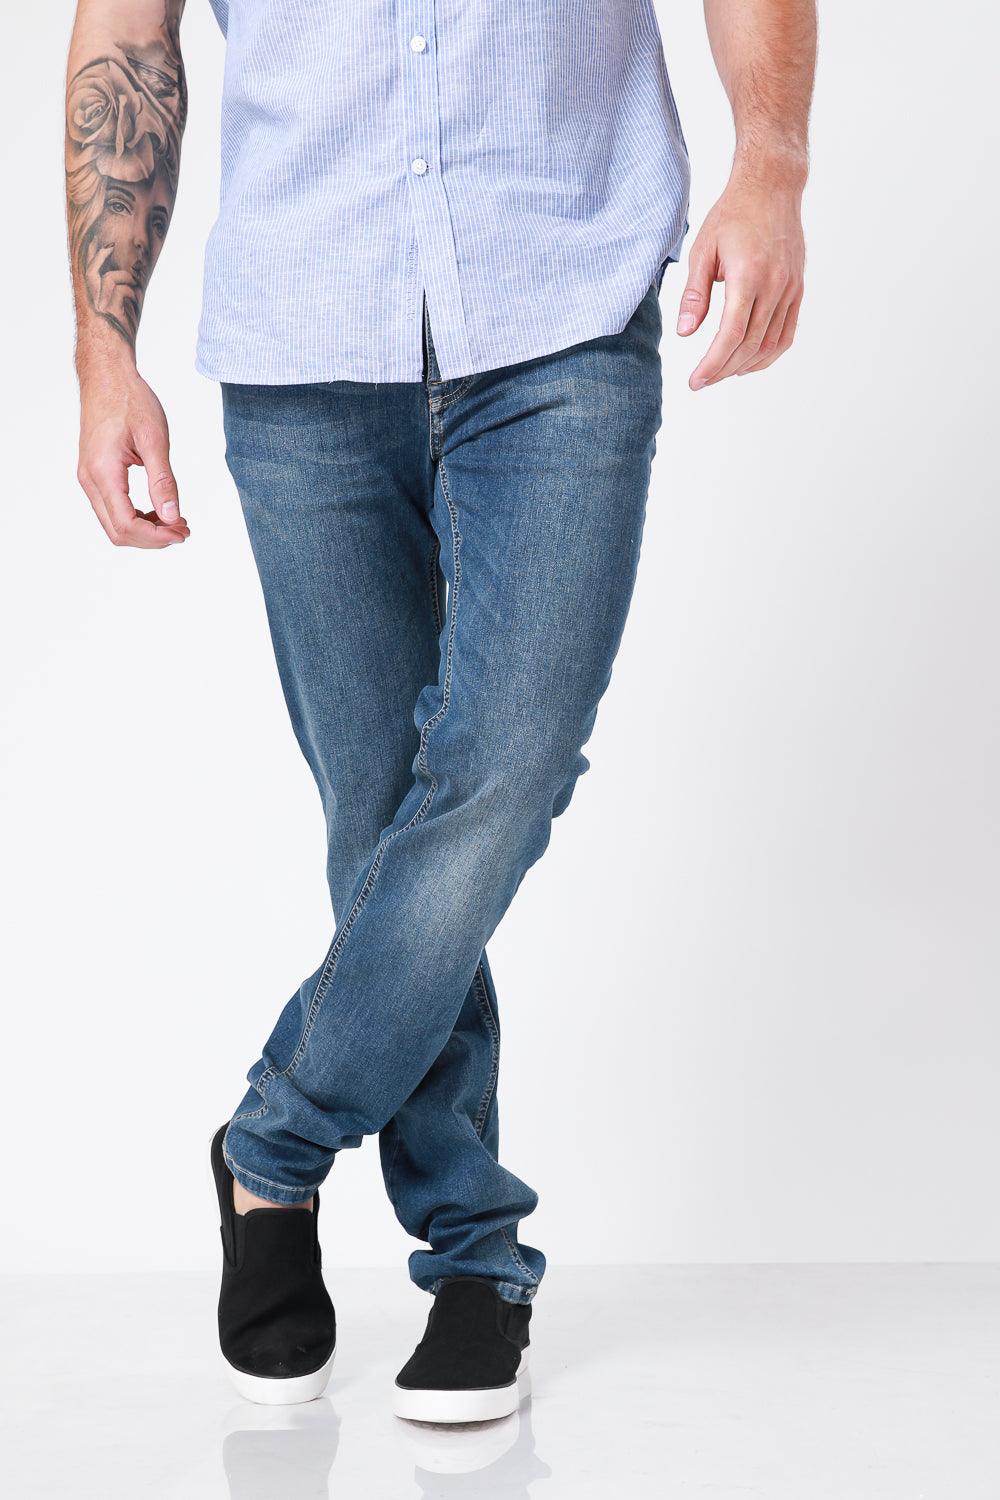 KENNETH COLE - ג'ינס סקיני כחול בהיר - MASHBIR//365